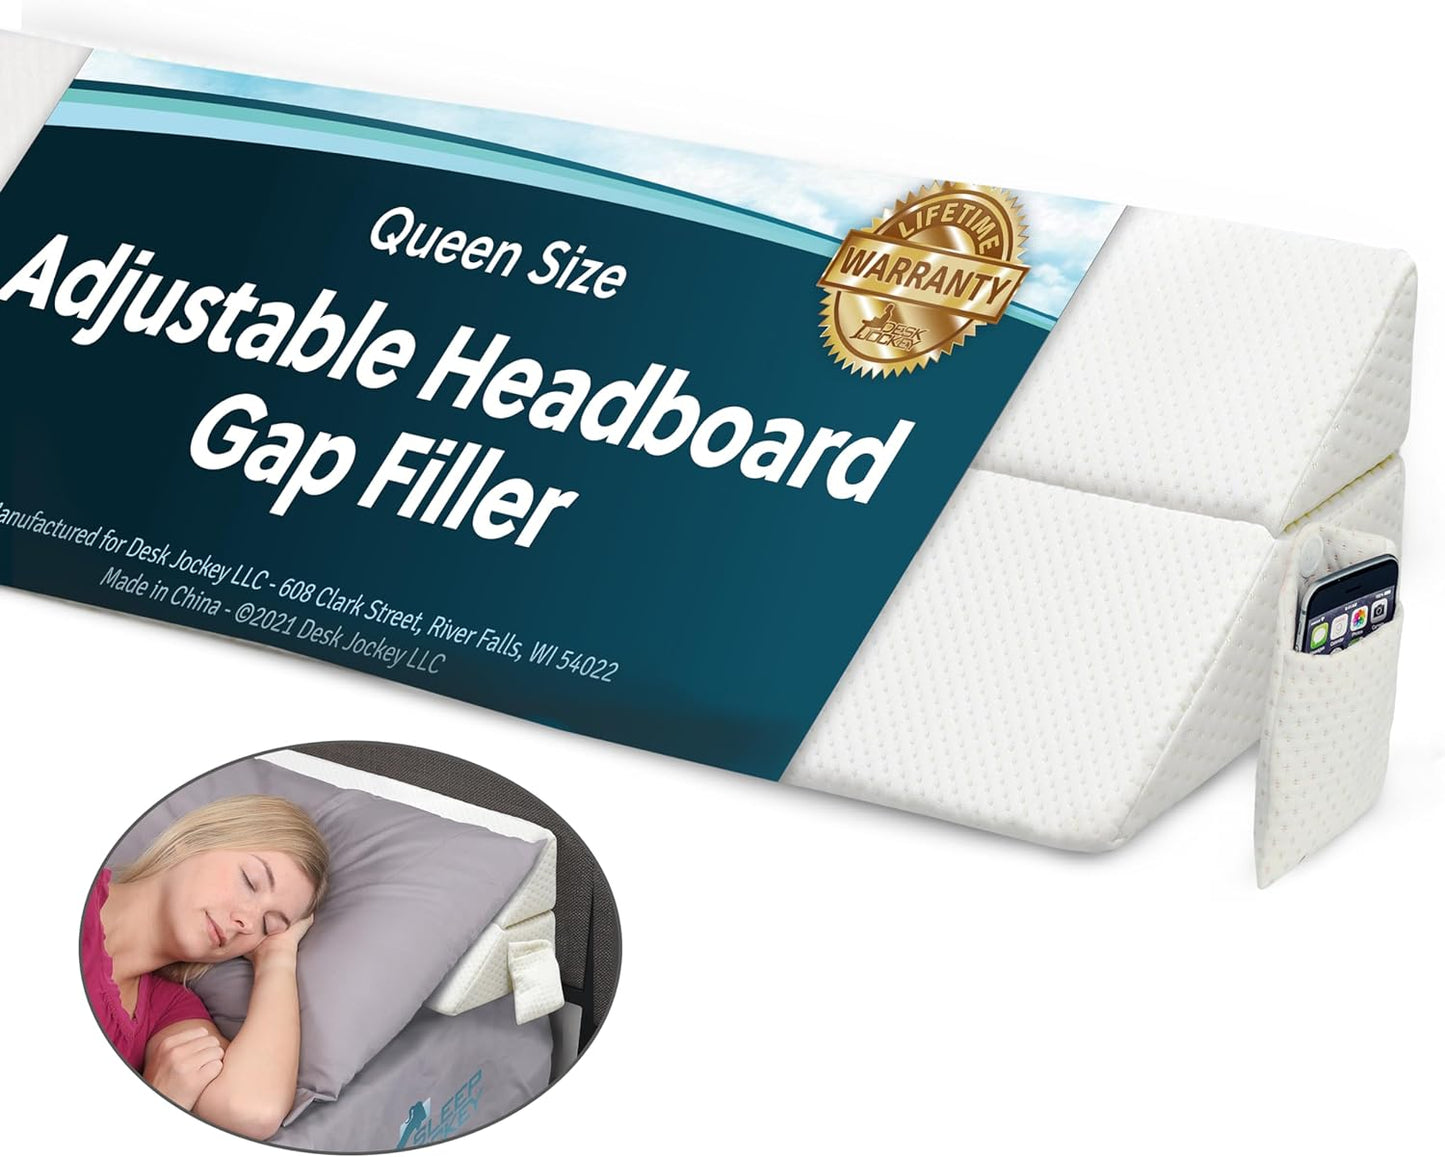 Sleep Jockey Foldable Headboard Wedge for Headboard Gap - Queen Size